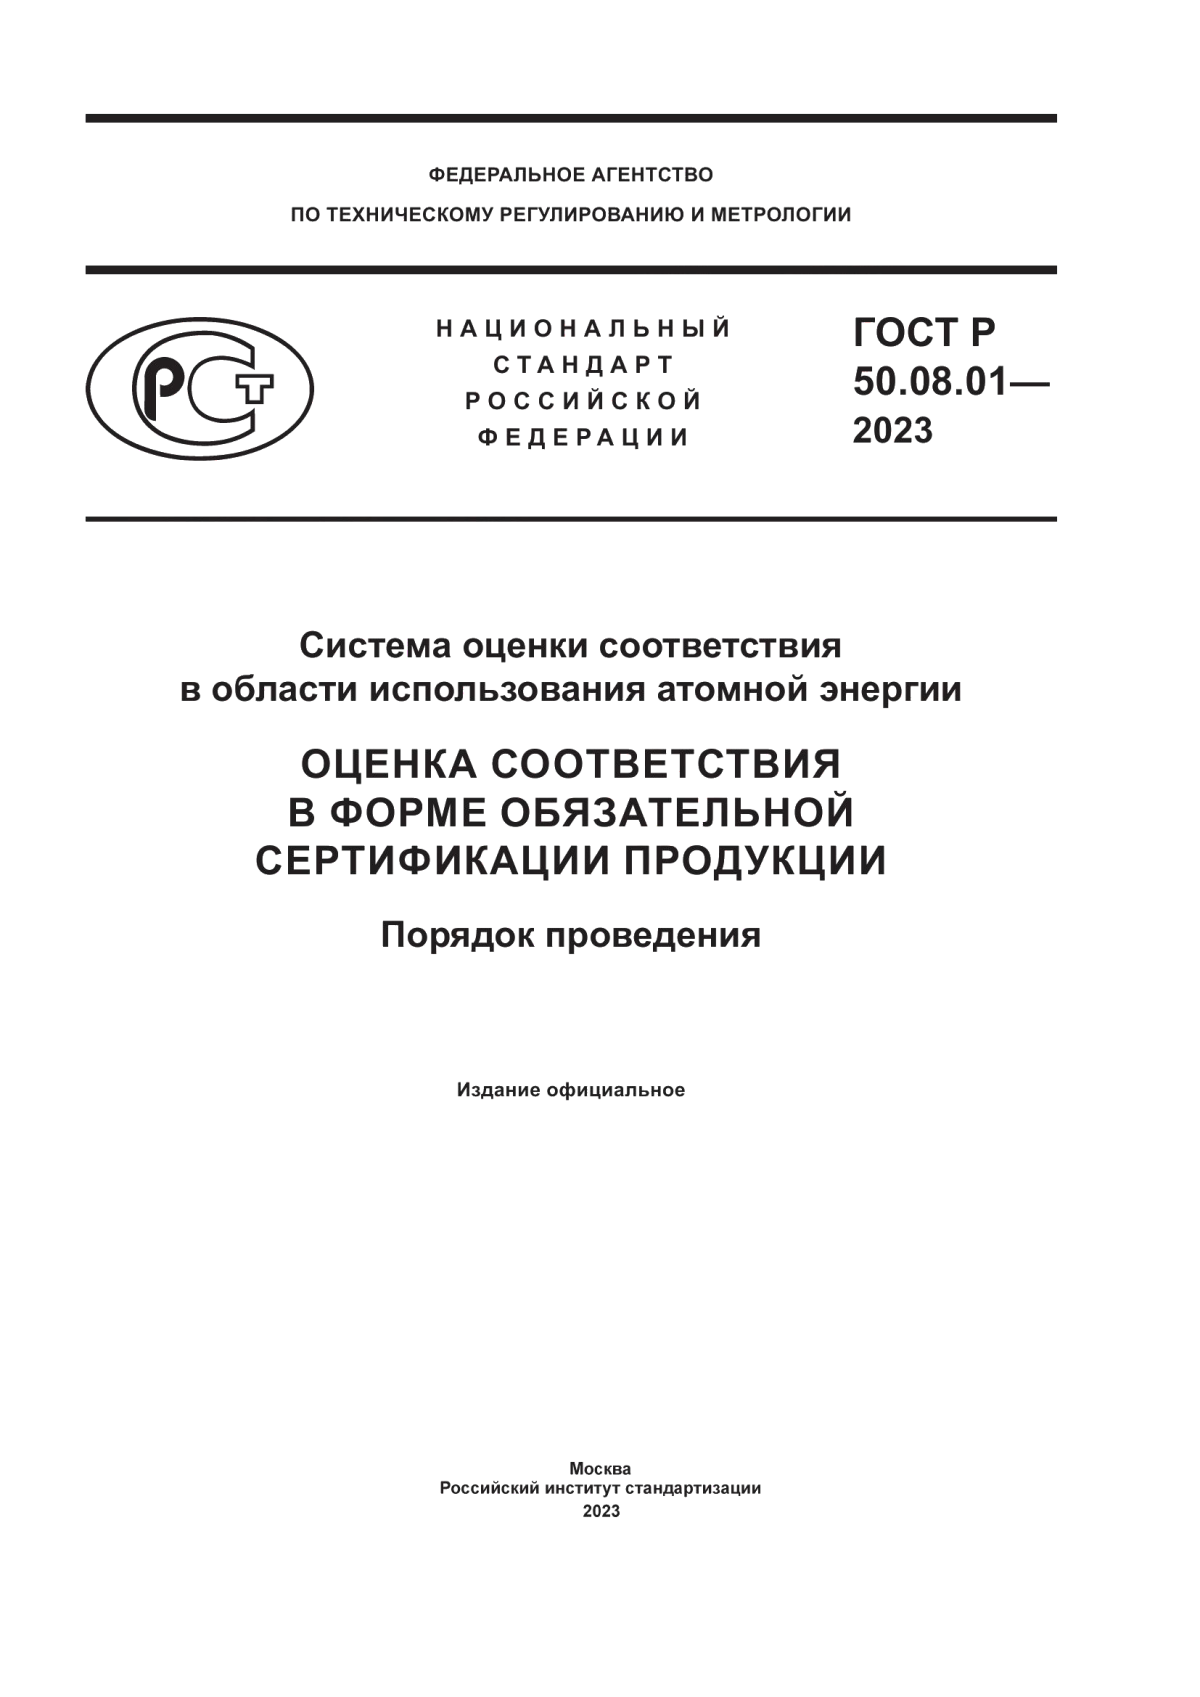 ГОСТ Р 50.08.01-2023 Система оценки соответствия в области использования атомной энергии. Оценка соответствия в форме обязательной сертификации продукции. Порядок проведения